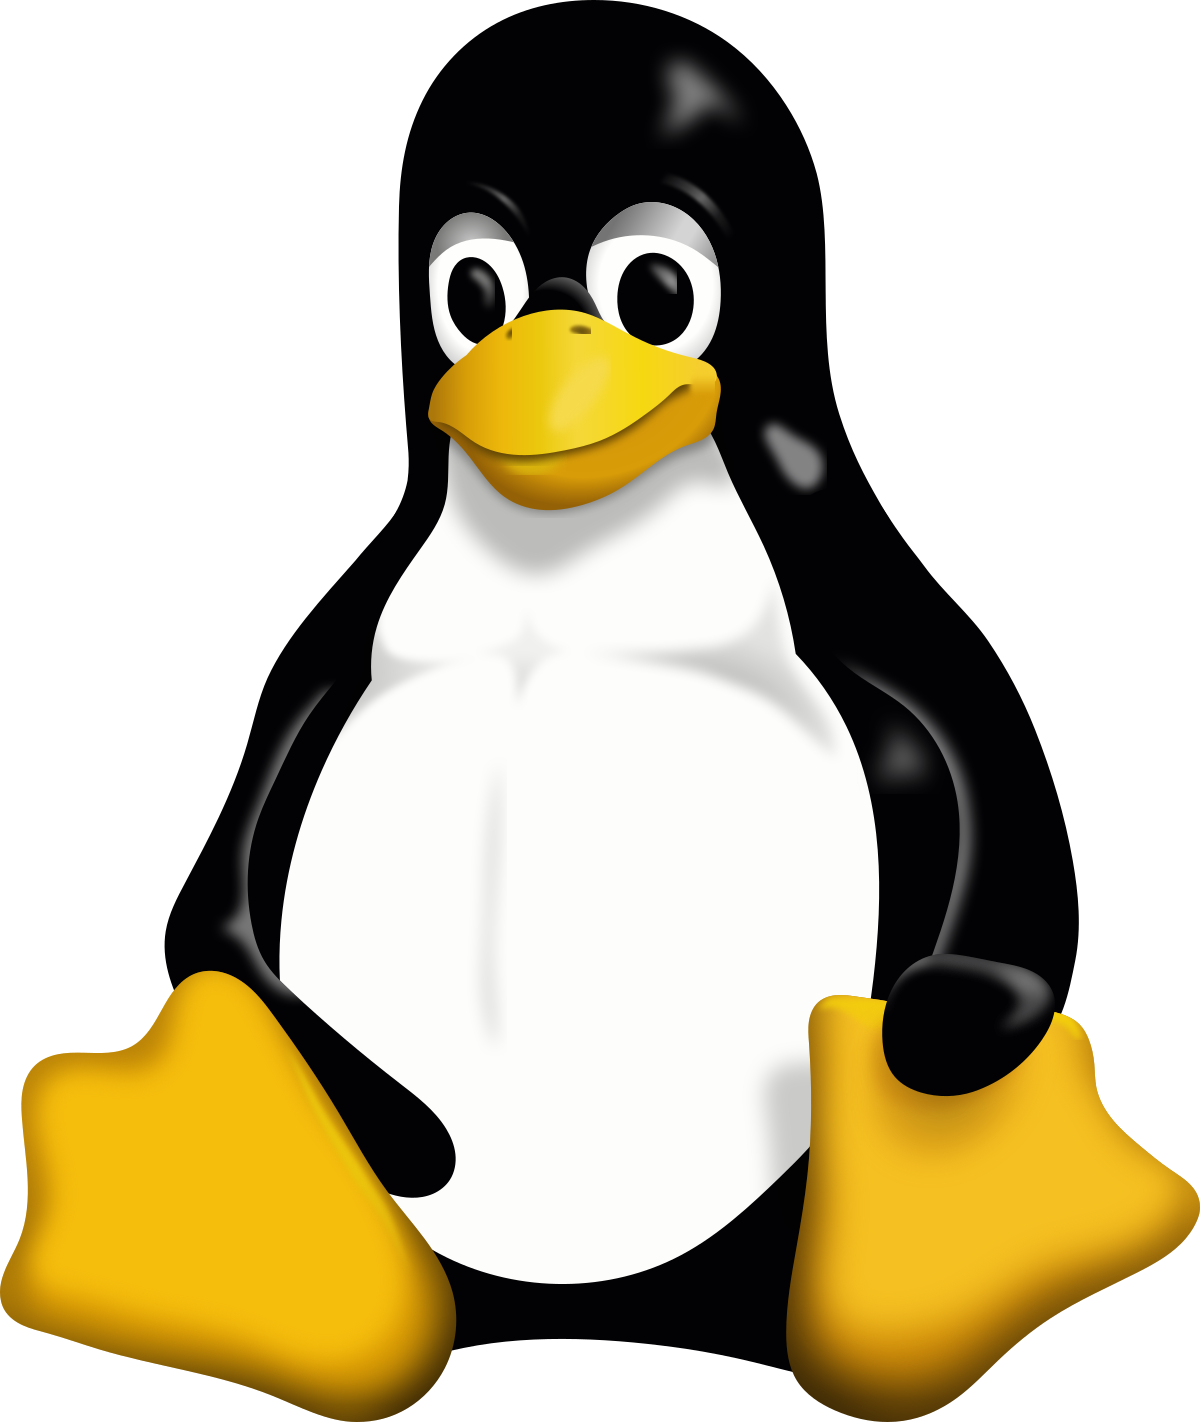 Immagine pubblicata in relazione al seguente contenuto: The Linux Kernel Organization rilascia il Linux Kernel 6.7.8: info e download | Nome immagine: news35368_Linux_Kernel_1.png